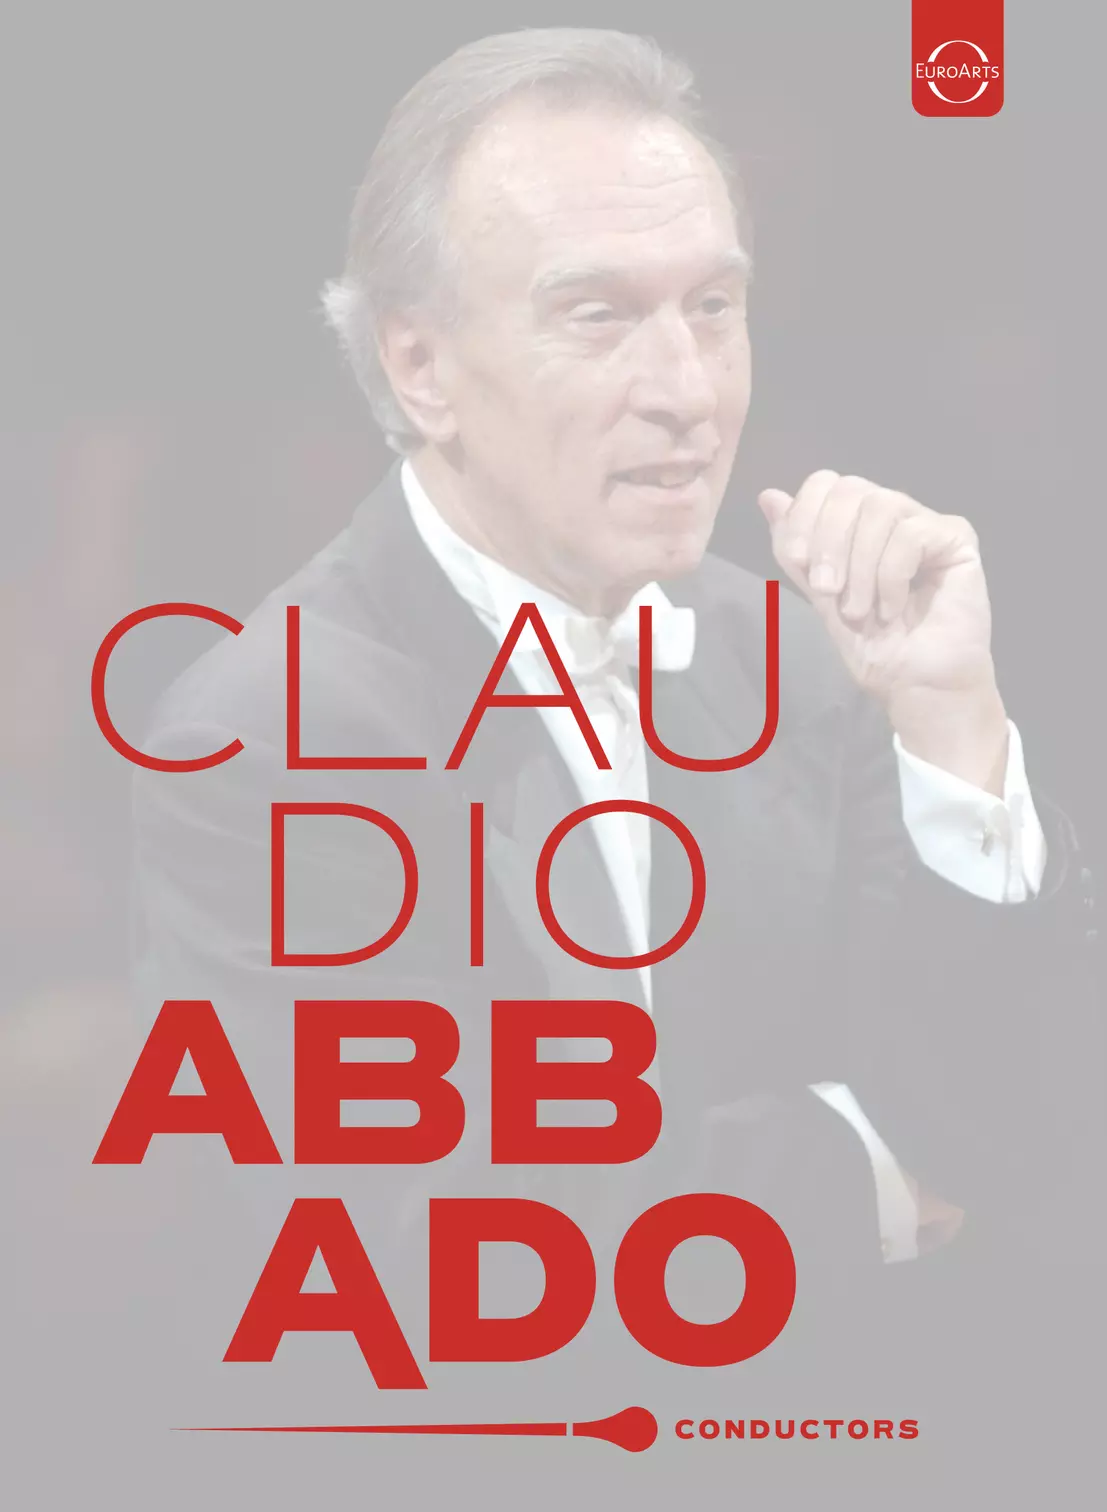 Claudio Abbado - Conductors